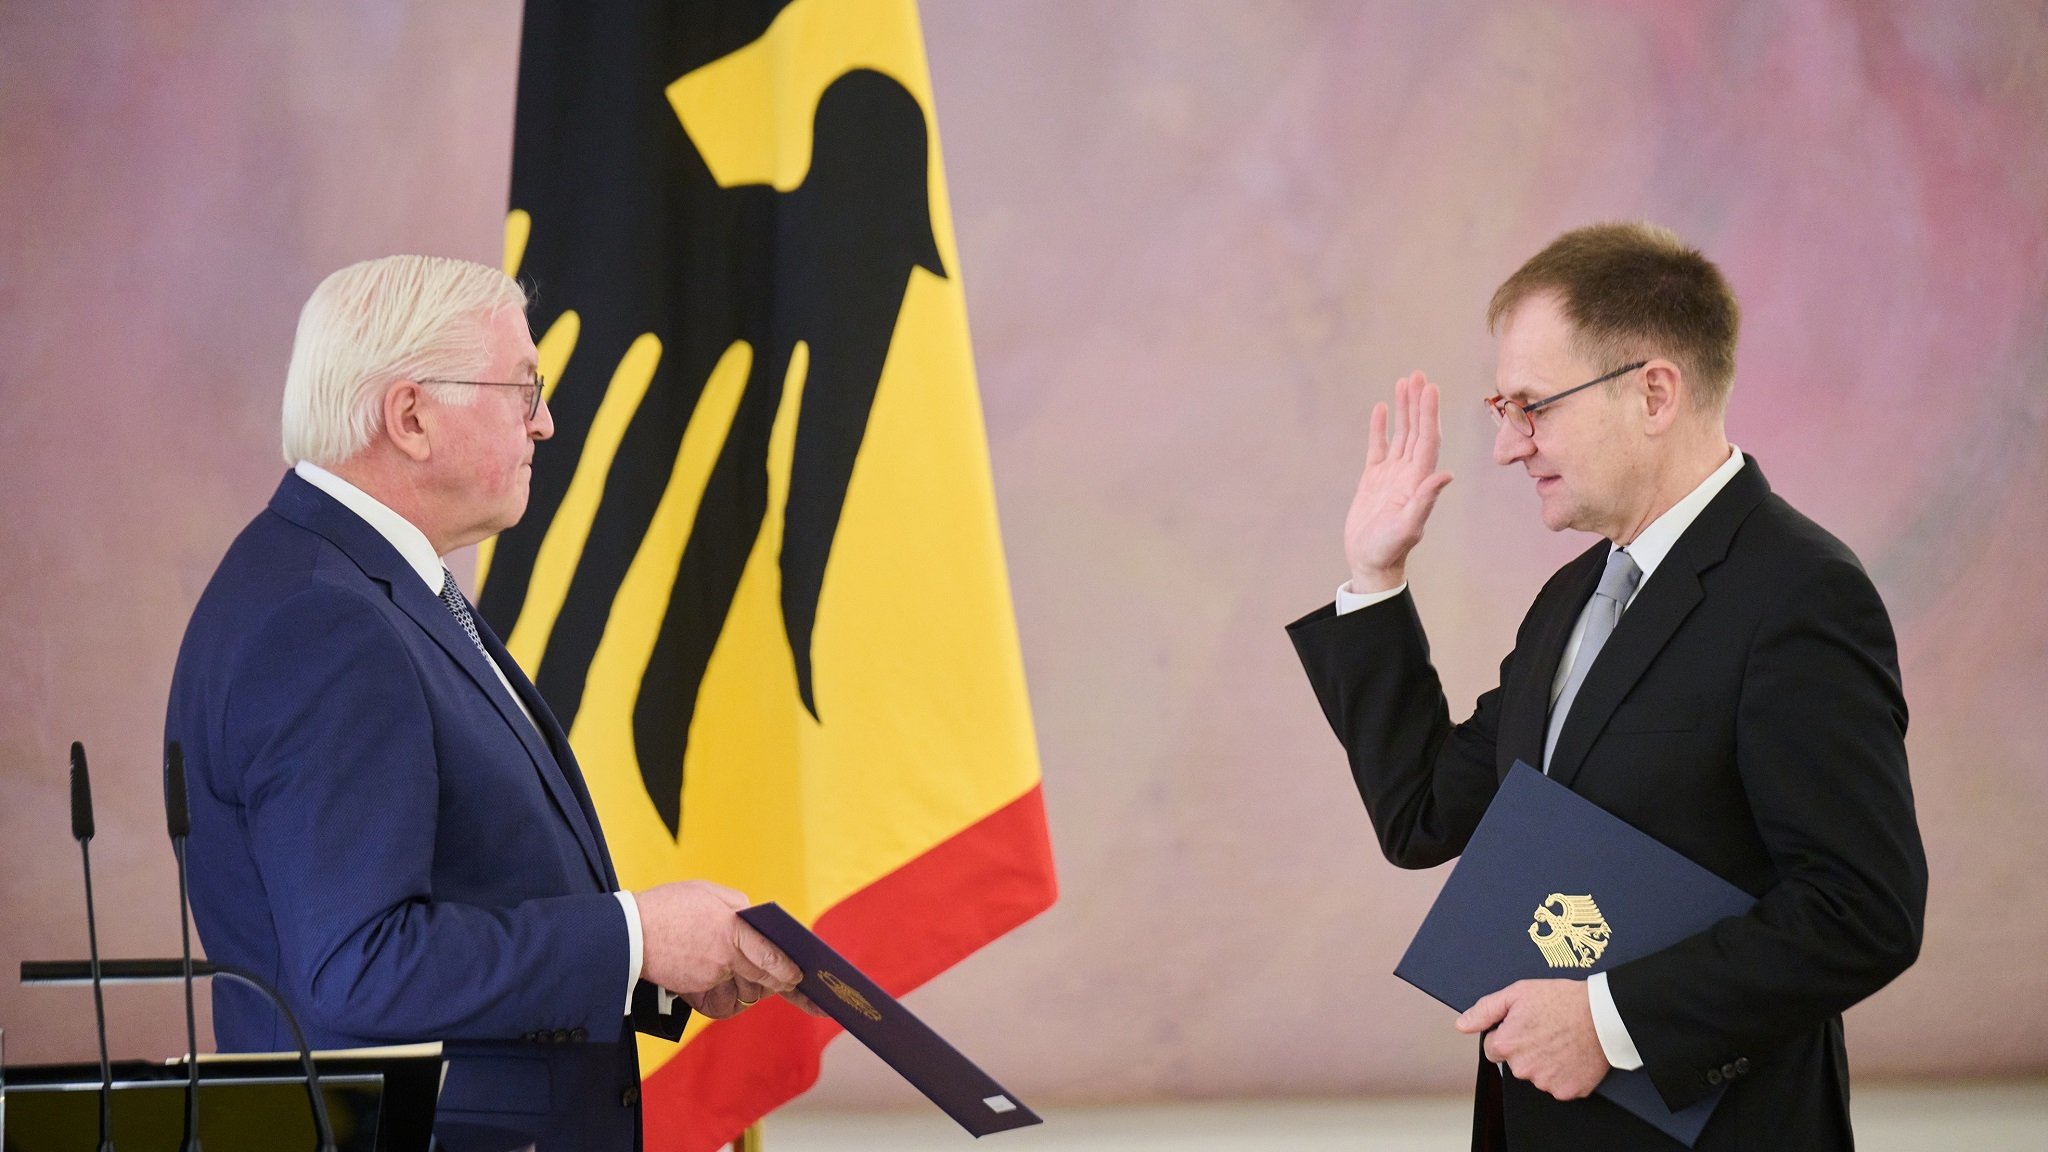 Bundespräsident Frank-Walter Steinmeier vereidigt Peter Frank, Richter des Bundesverfassungsgerichts, im Schloss Bellevue.